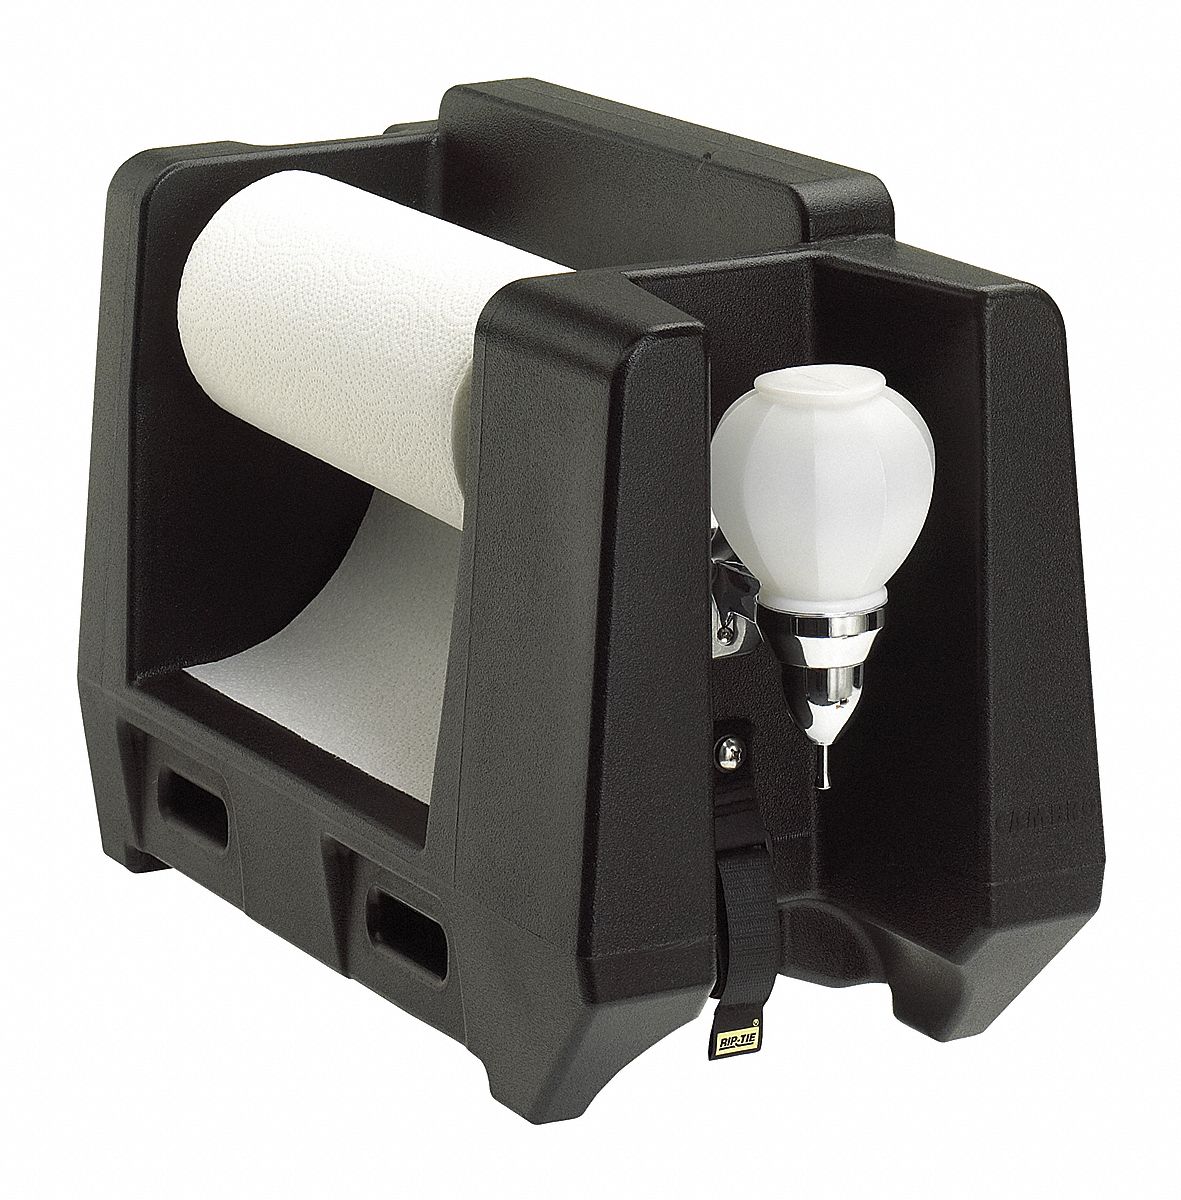 22NV23 - Paper Towel and Soap Dispenser Black